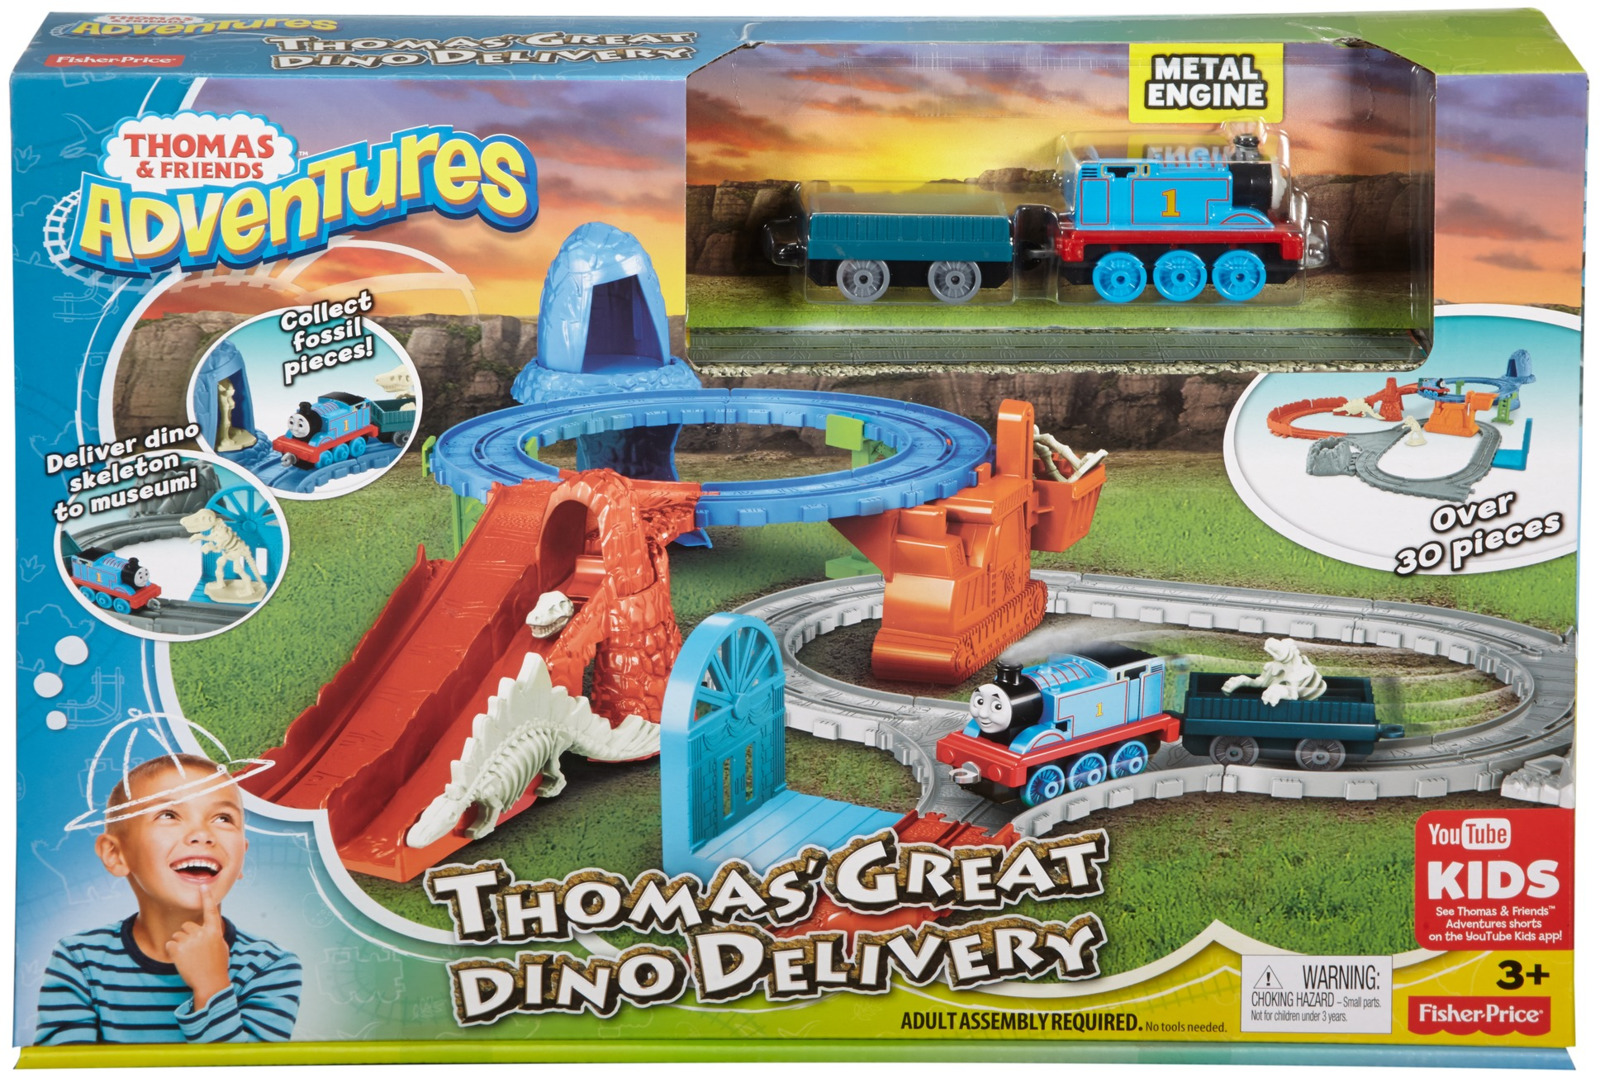 Thomas & Friends Железная дорога Раскопки динозавров